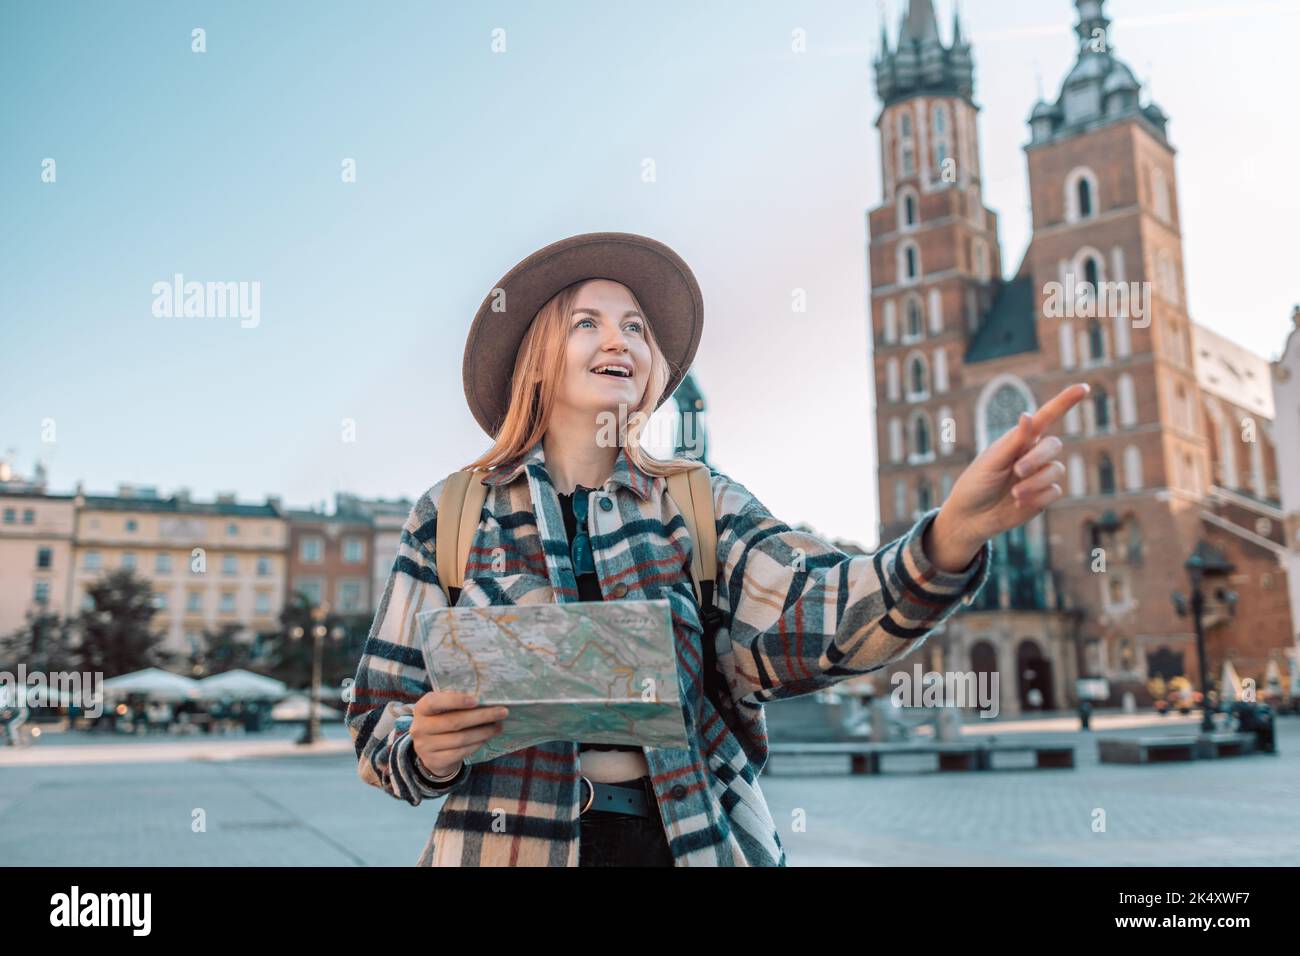 Felice giovane donna con una mappa della città e uno zaino in viaggio nella cresta della città vecchia di Cracovia, Polonia. Concetto di divertimento, viaggio e turismo. Foto Stock